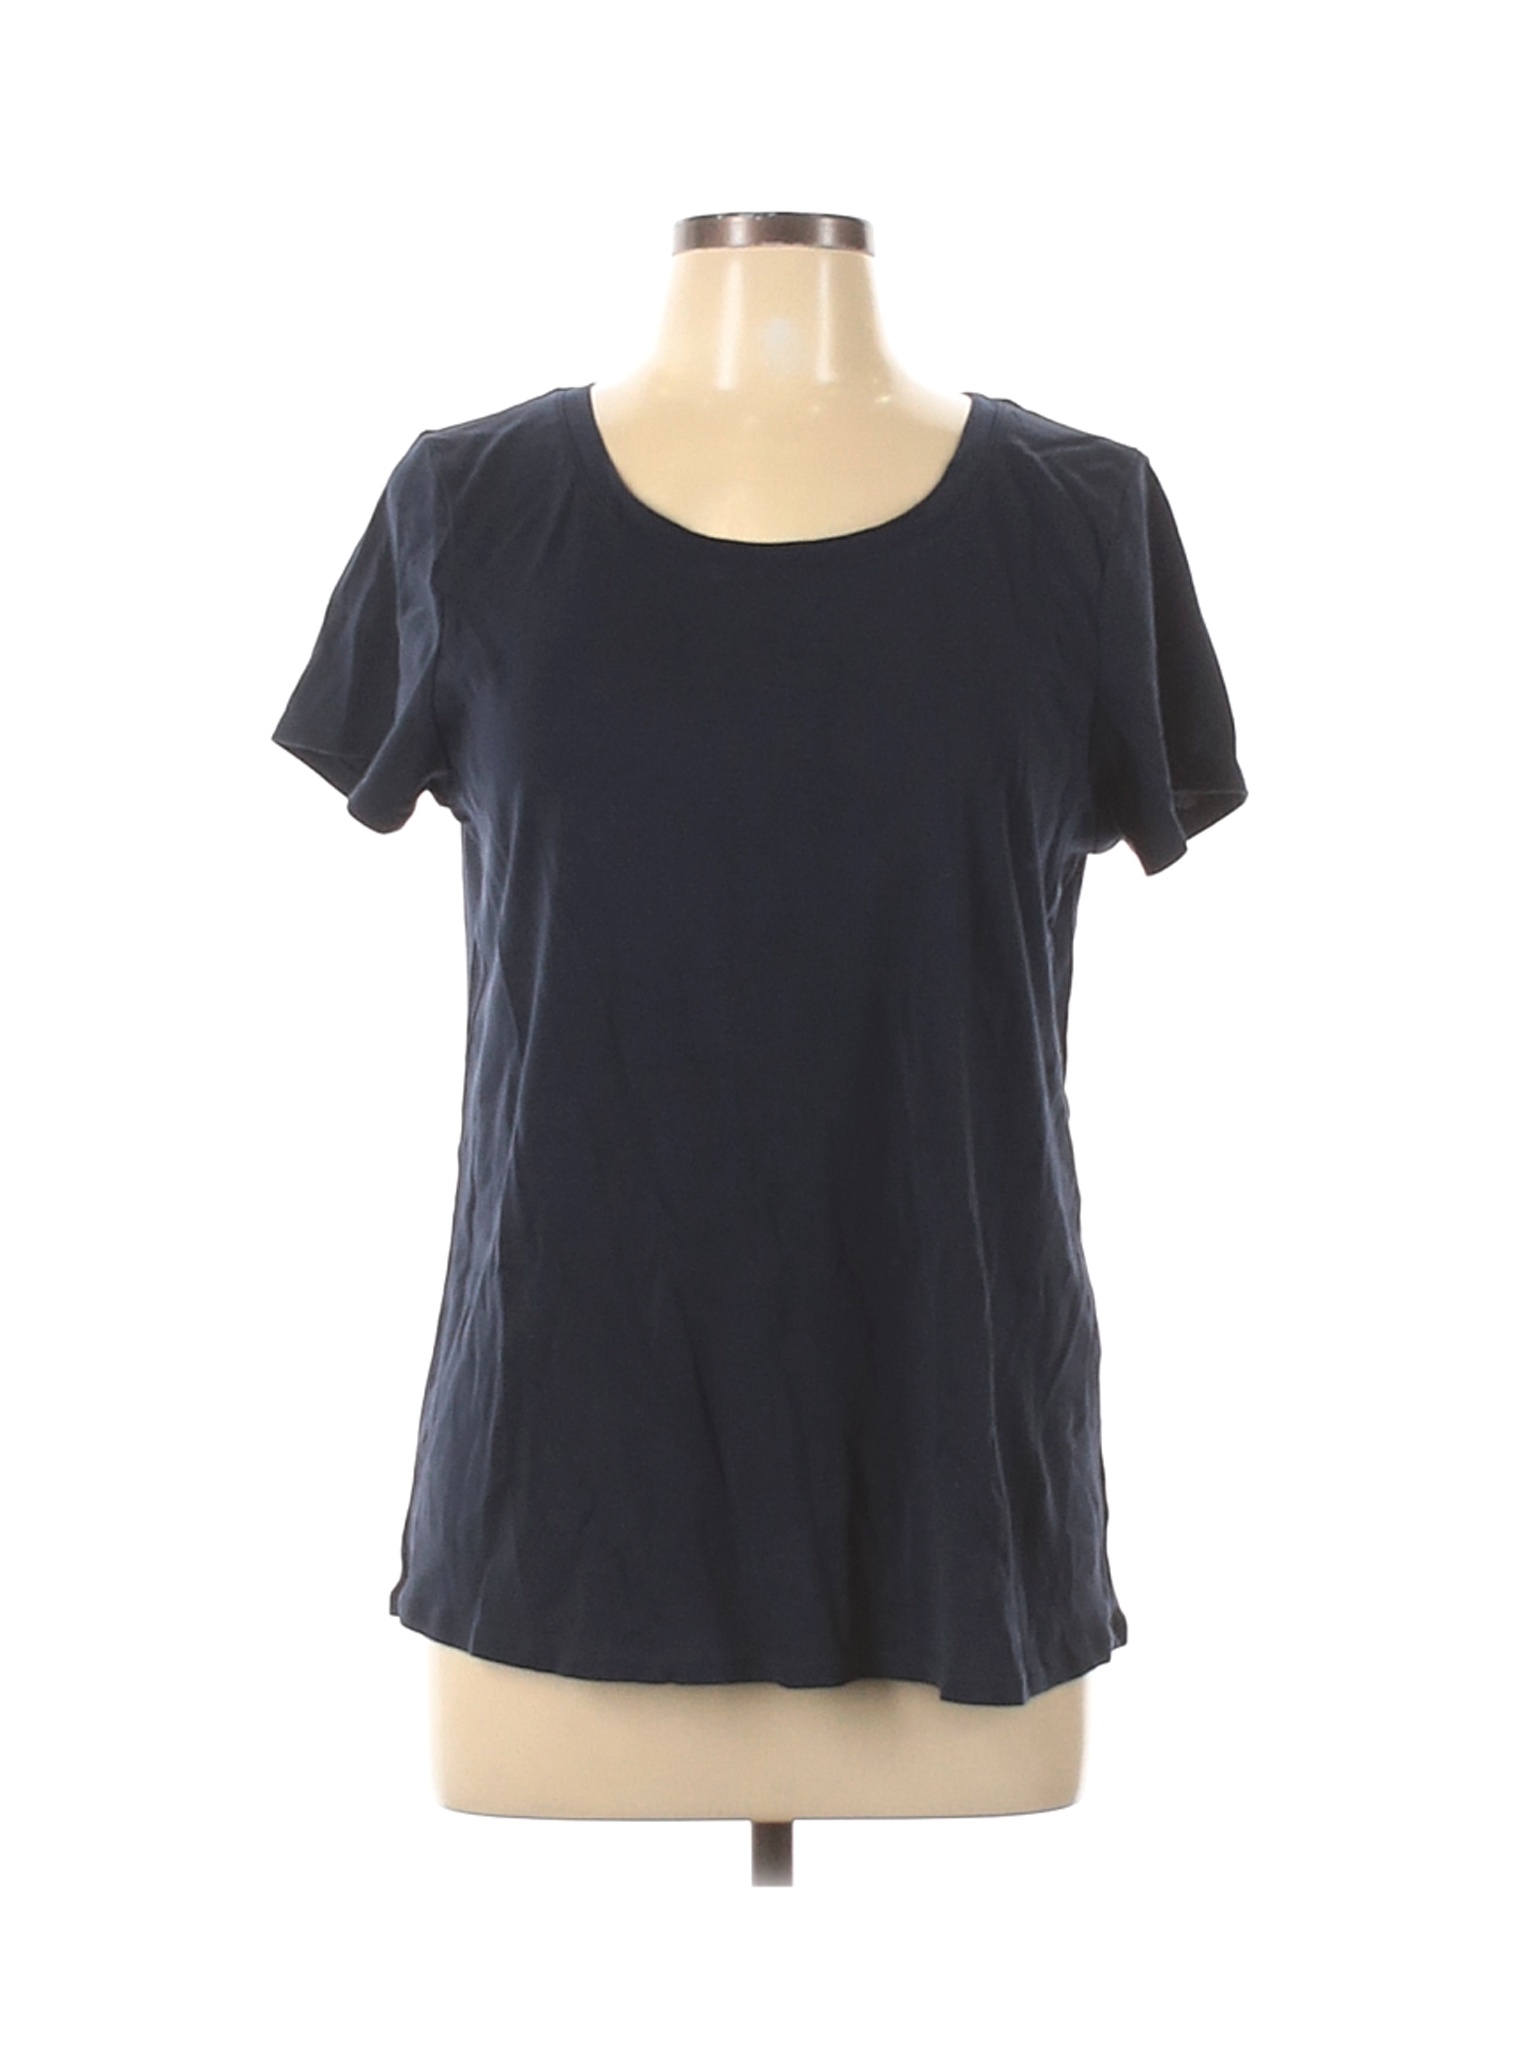 J.Jill Women Blue Short Sleeve T-Shirt L | eBay